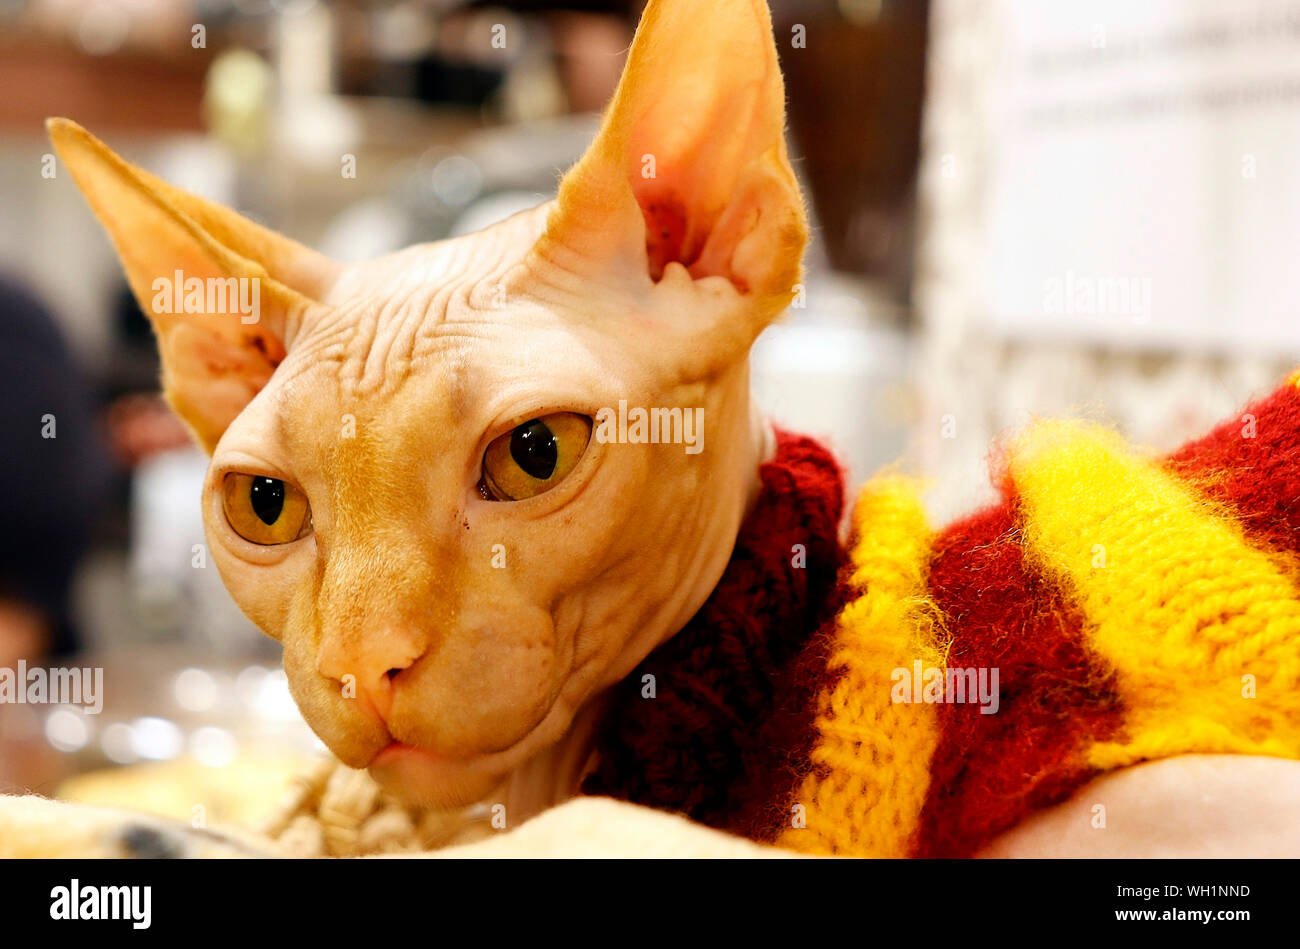 Sphinx, the hairless cat. Stock Photo